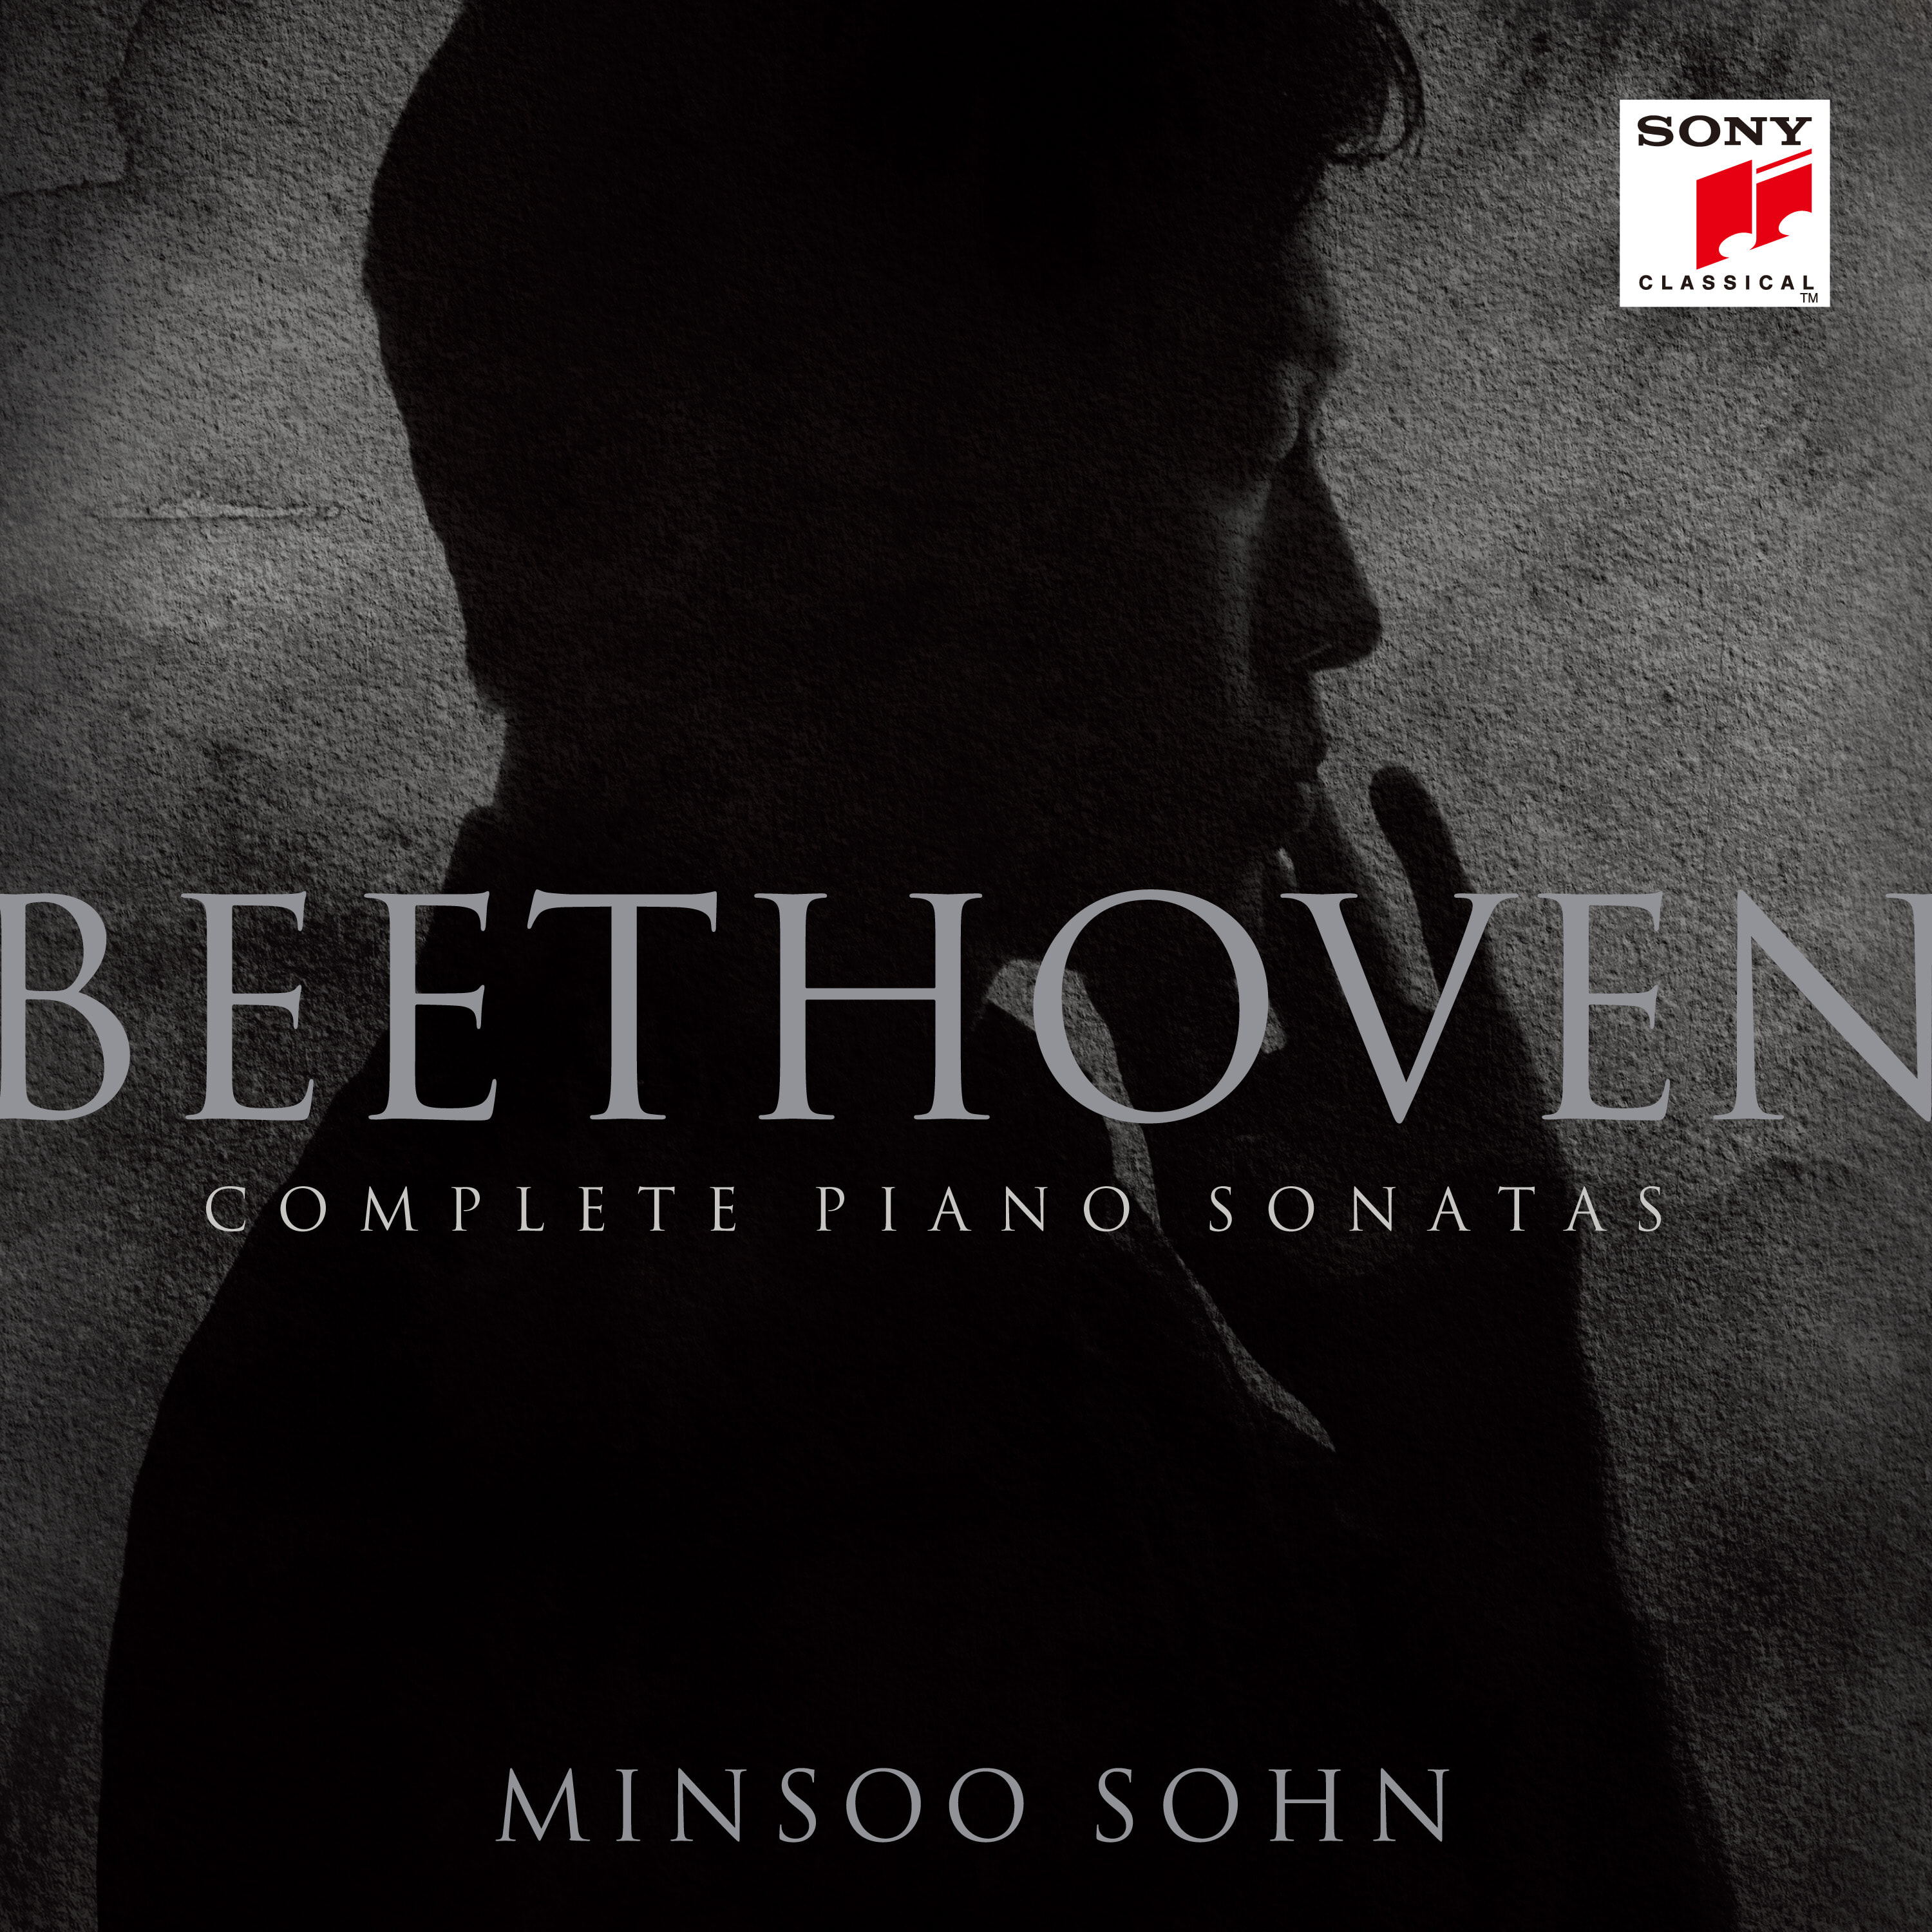 손민수 - 베토벤: 피아노 소나타 전곡 (Beethoven: Complete Piano Sonatas)